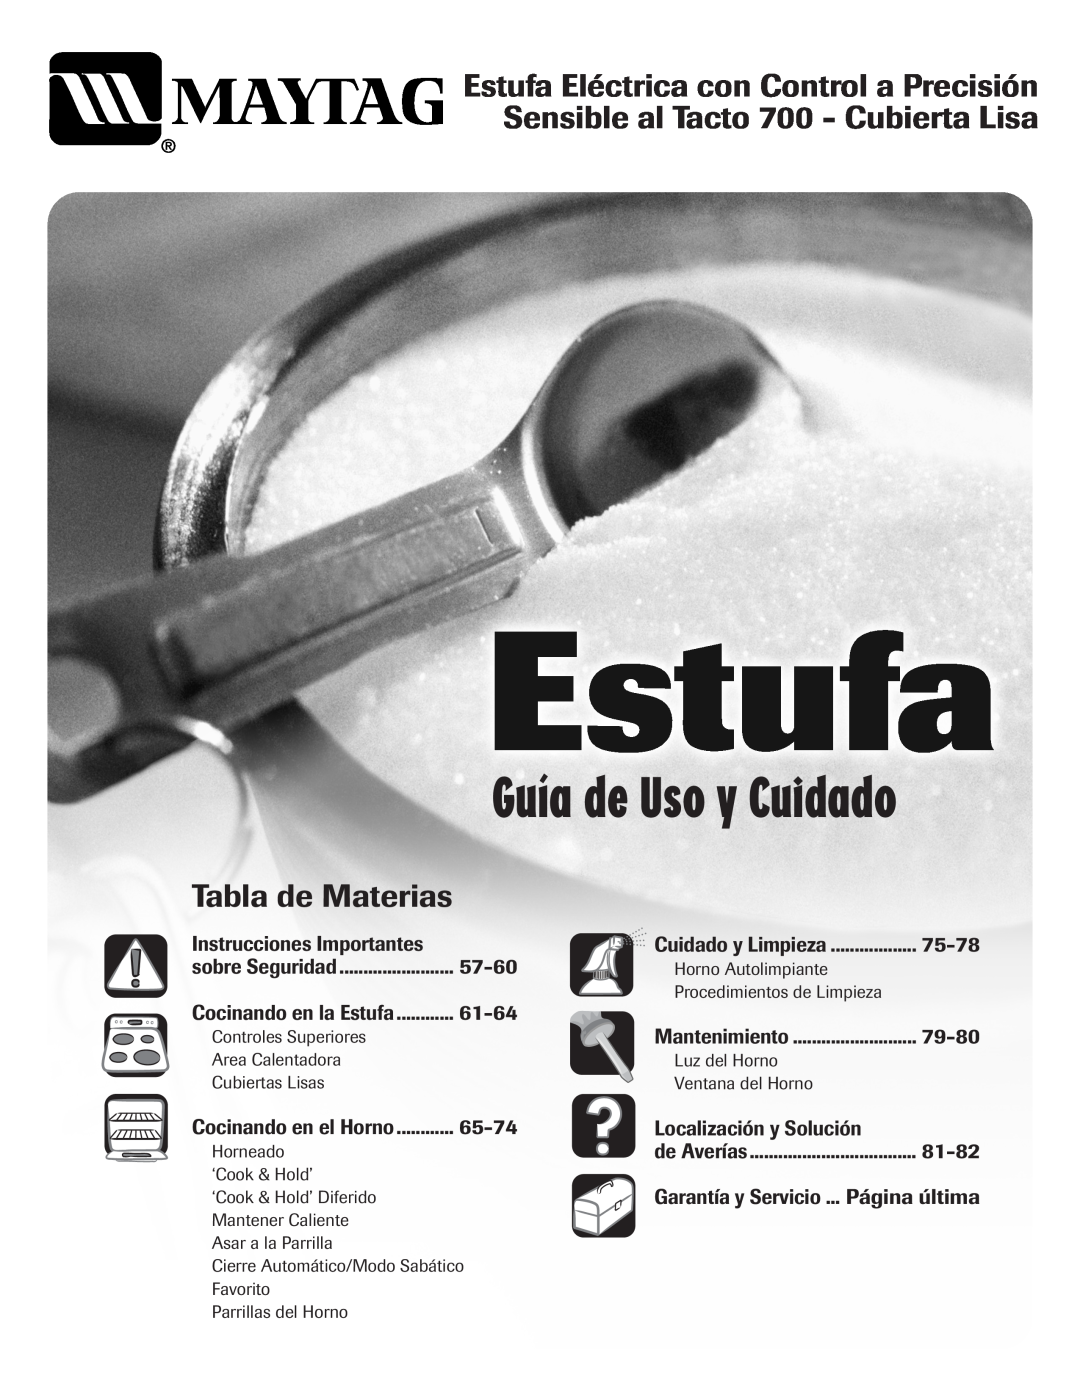 Maytag Range Guía de Uso y Cuidado, Estufa Eléctrica con Control a Precisión, Sensible al Tacto 700 - Cubierta Lisa, 57-60 